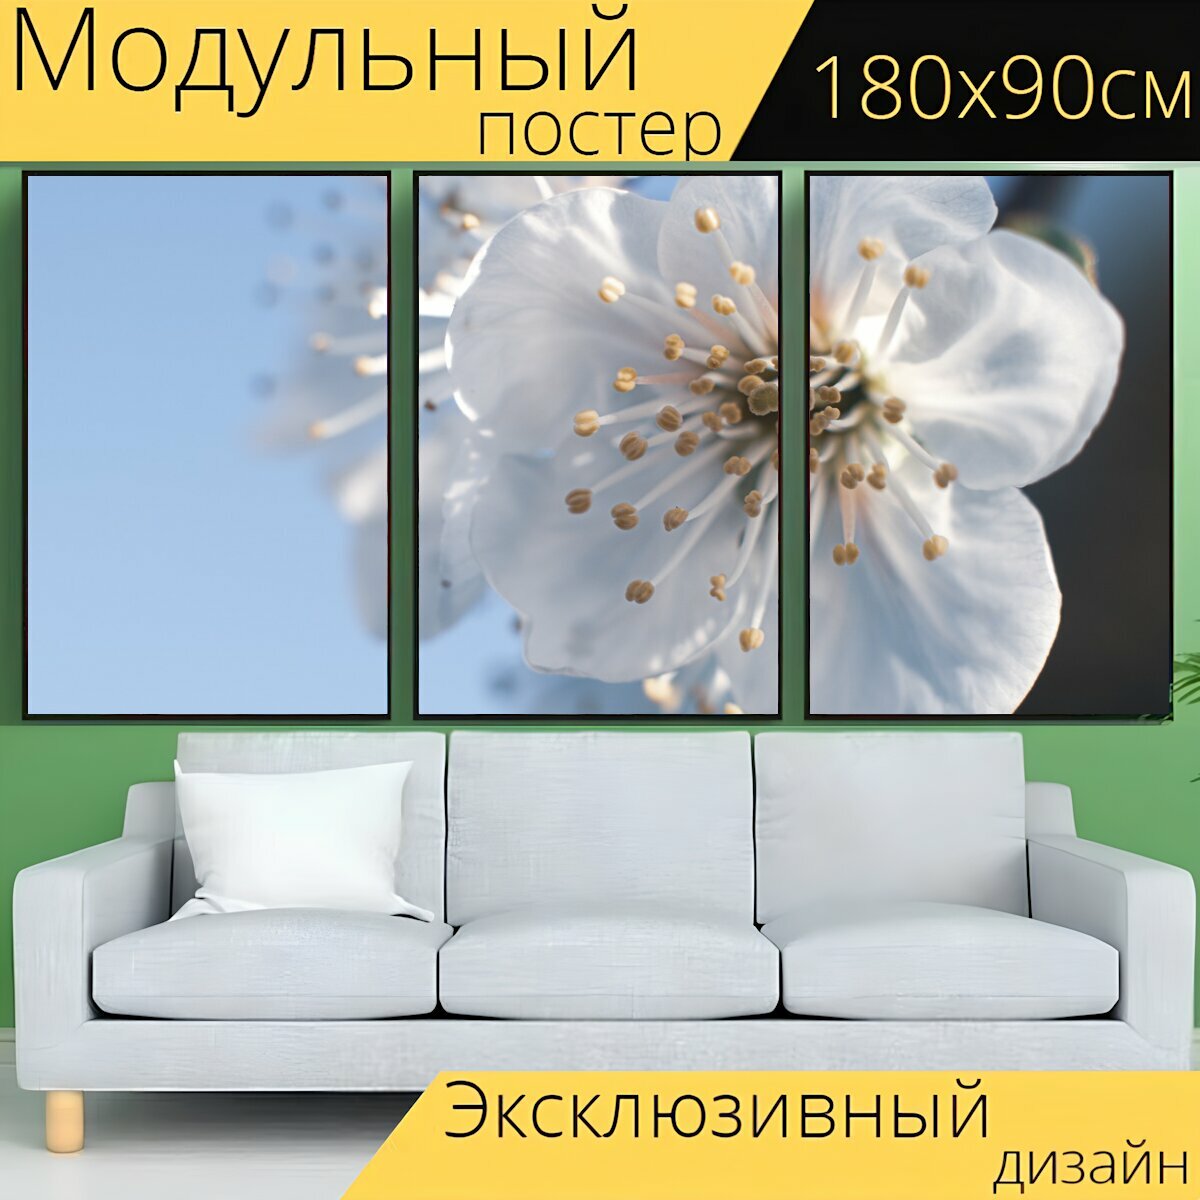 Модульный постер "Цветы, белые цветки, блум" 180 x 90 см. для интерьера